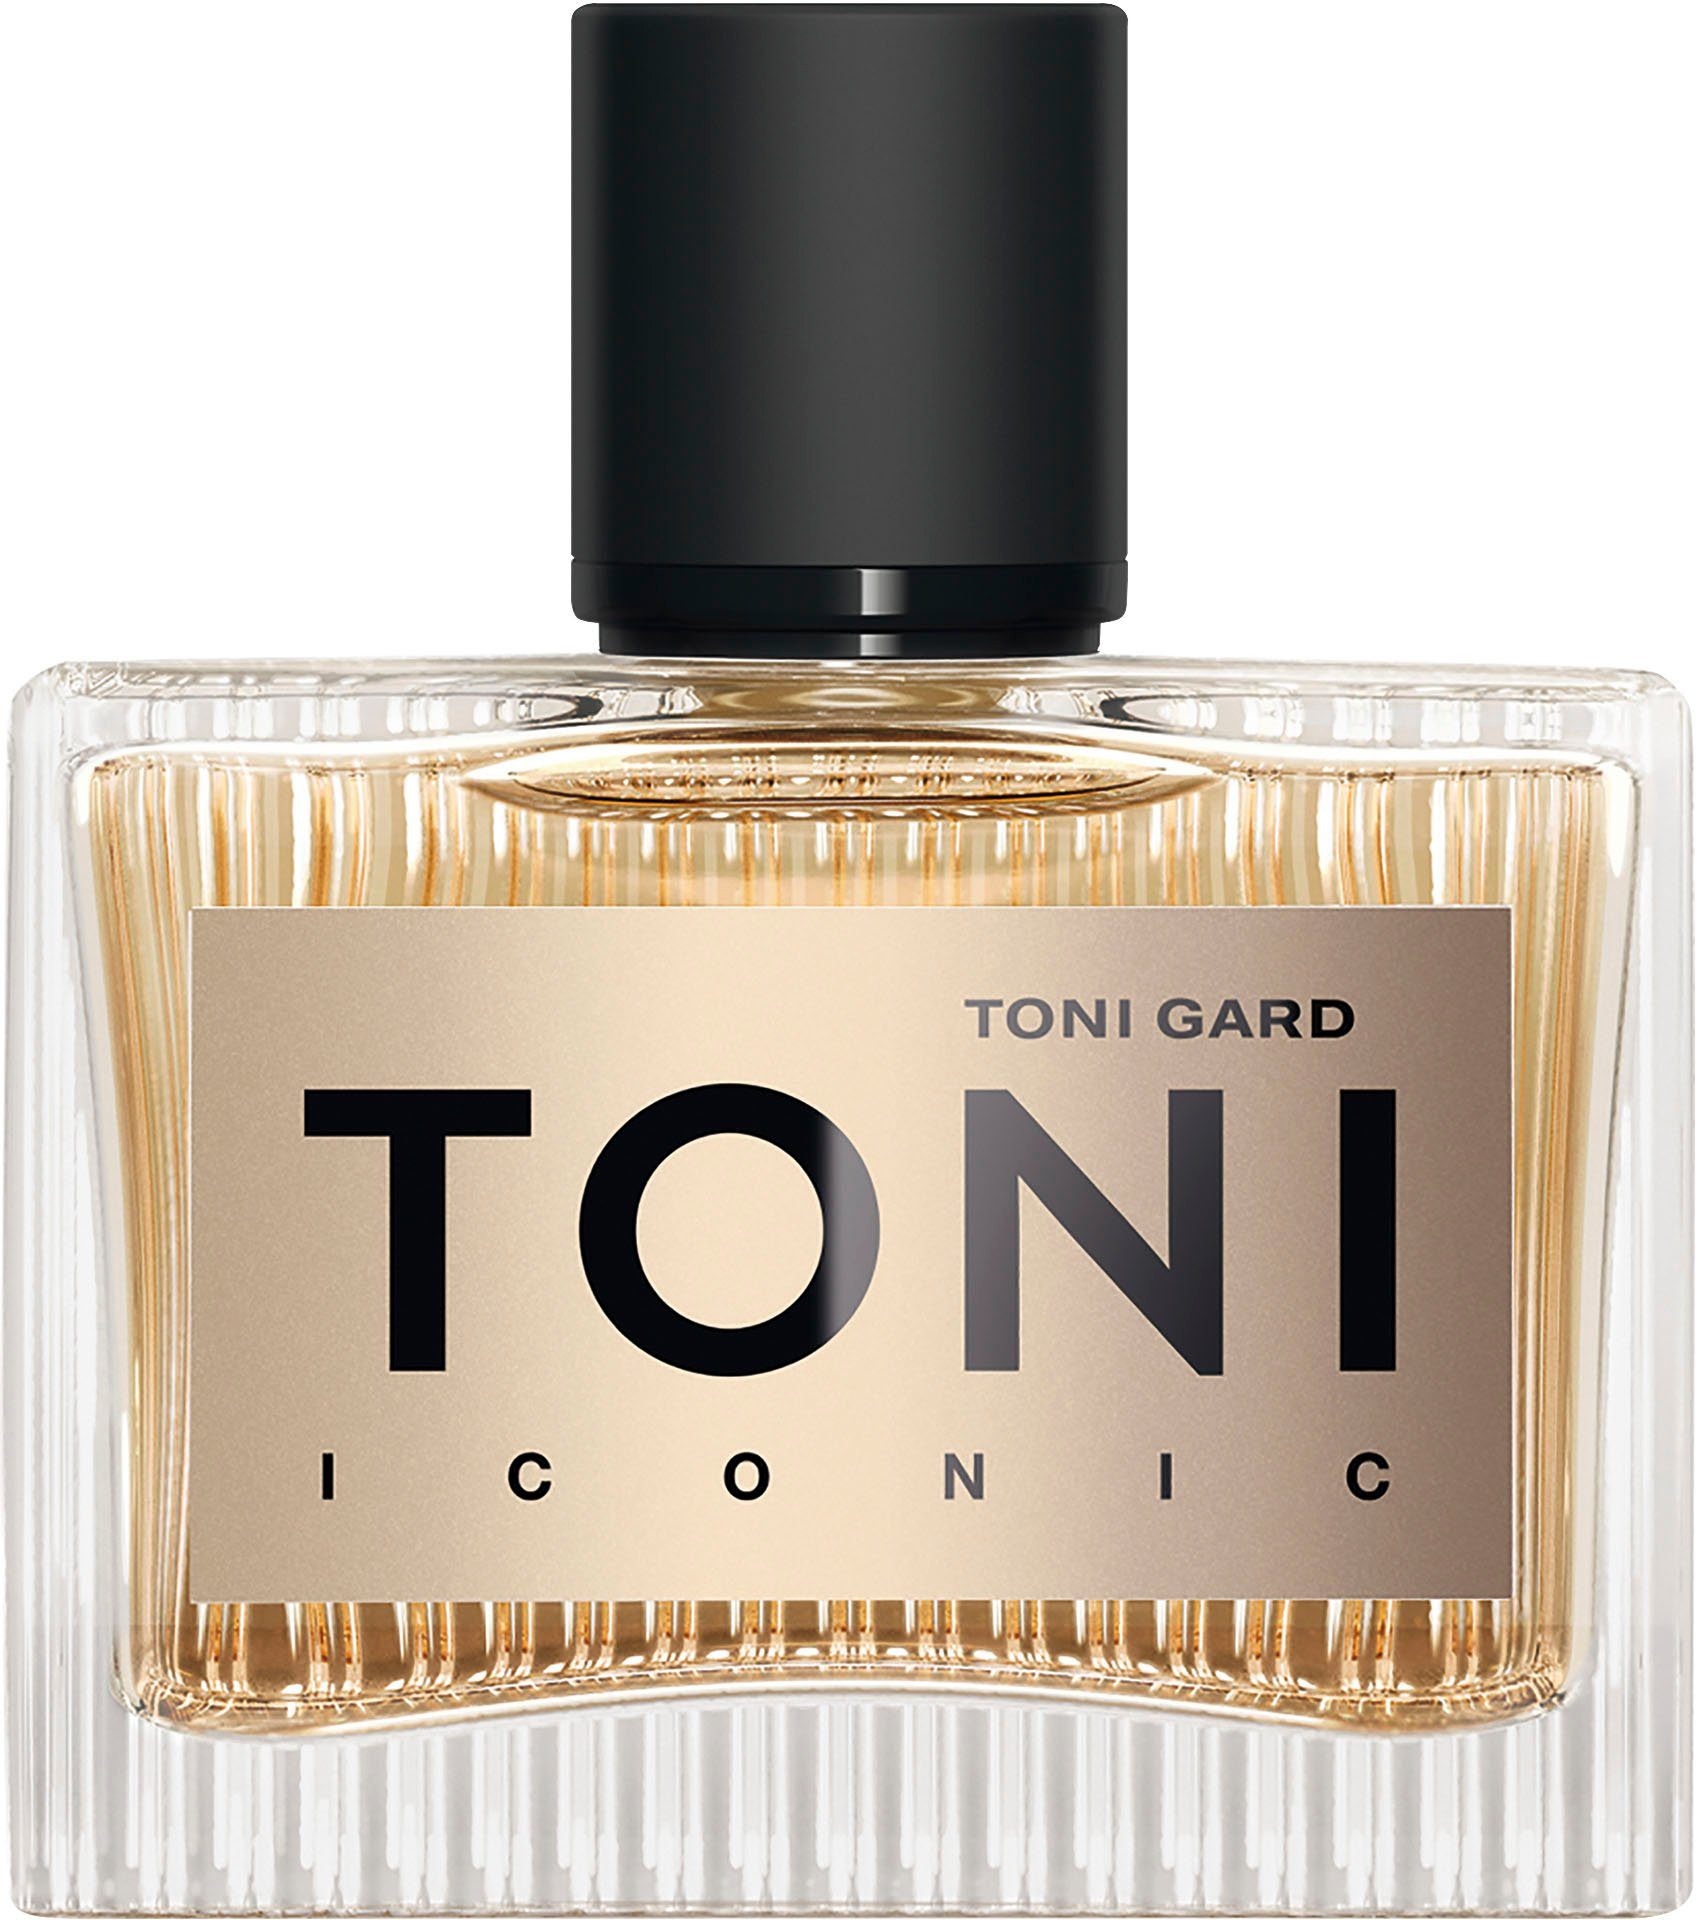 TONI GARD de ICONIC Parfum EdP Eau